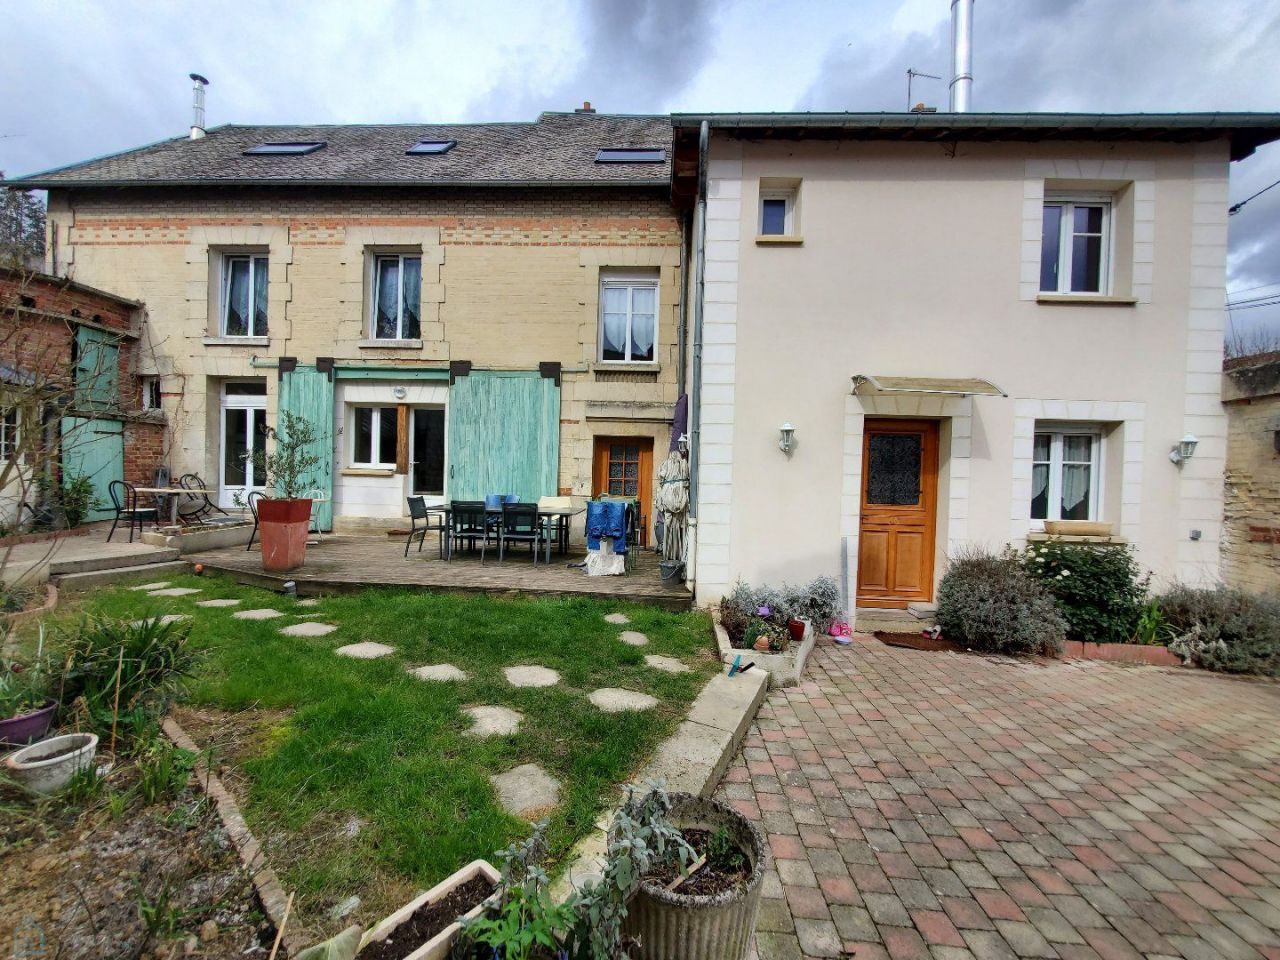 Casa en el Centro-Valle del Loira, Francia - imagen 1